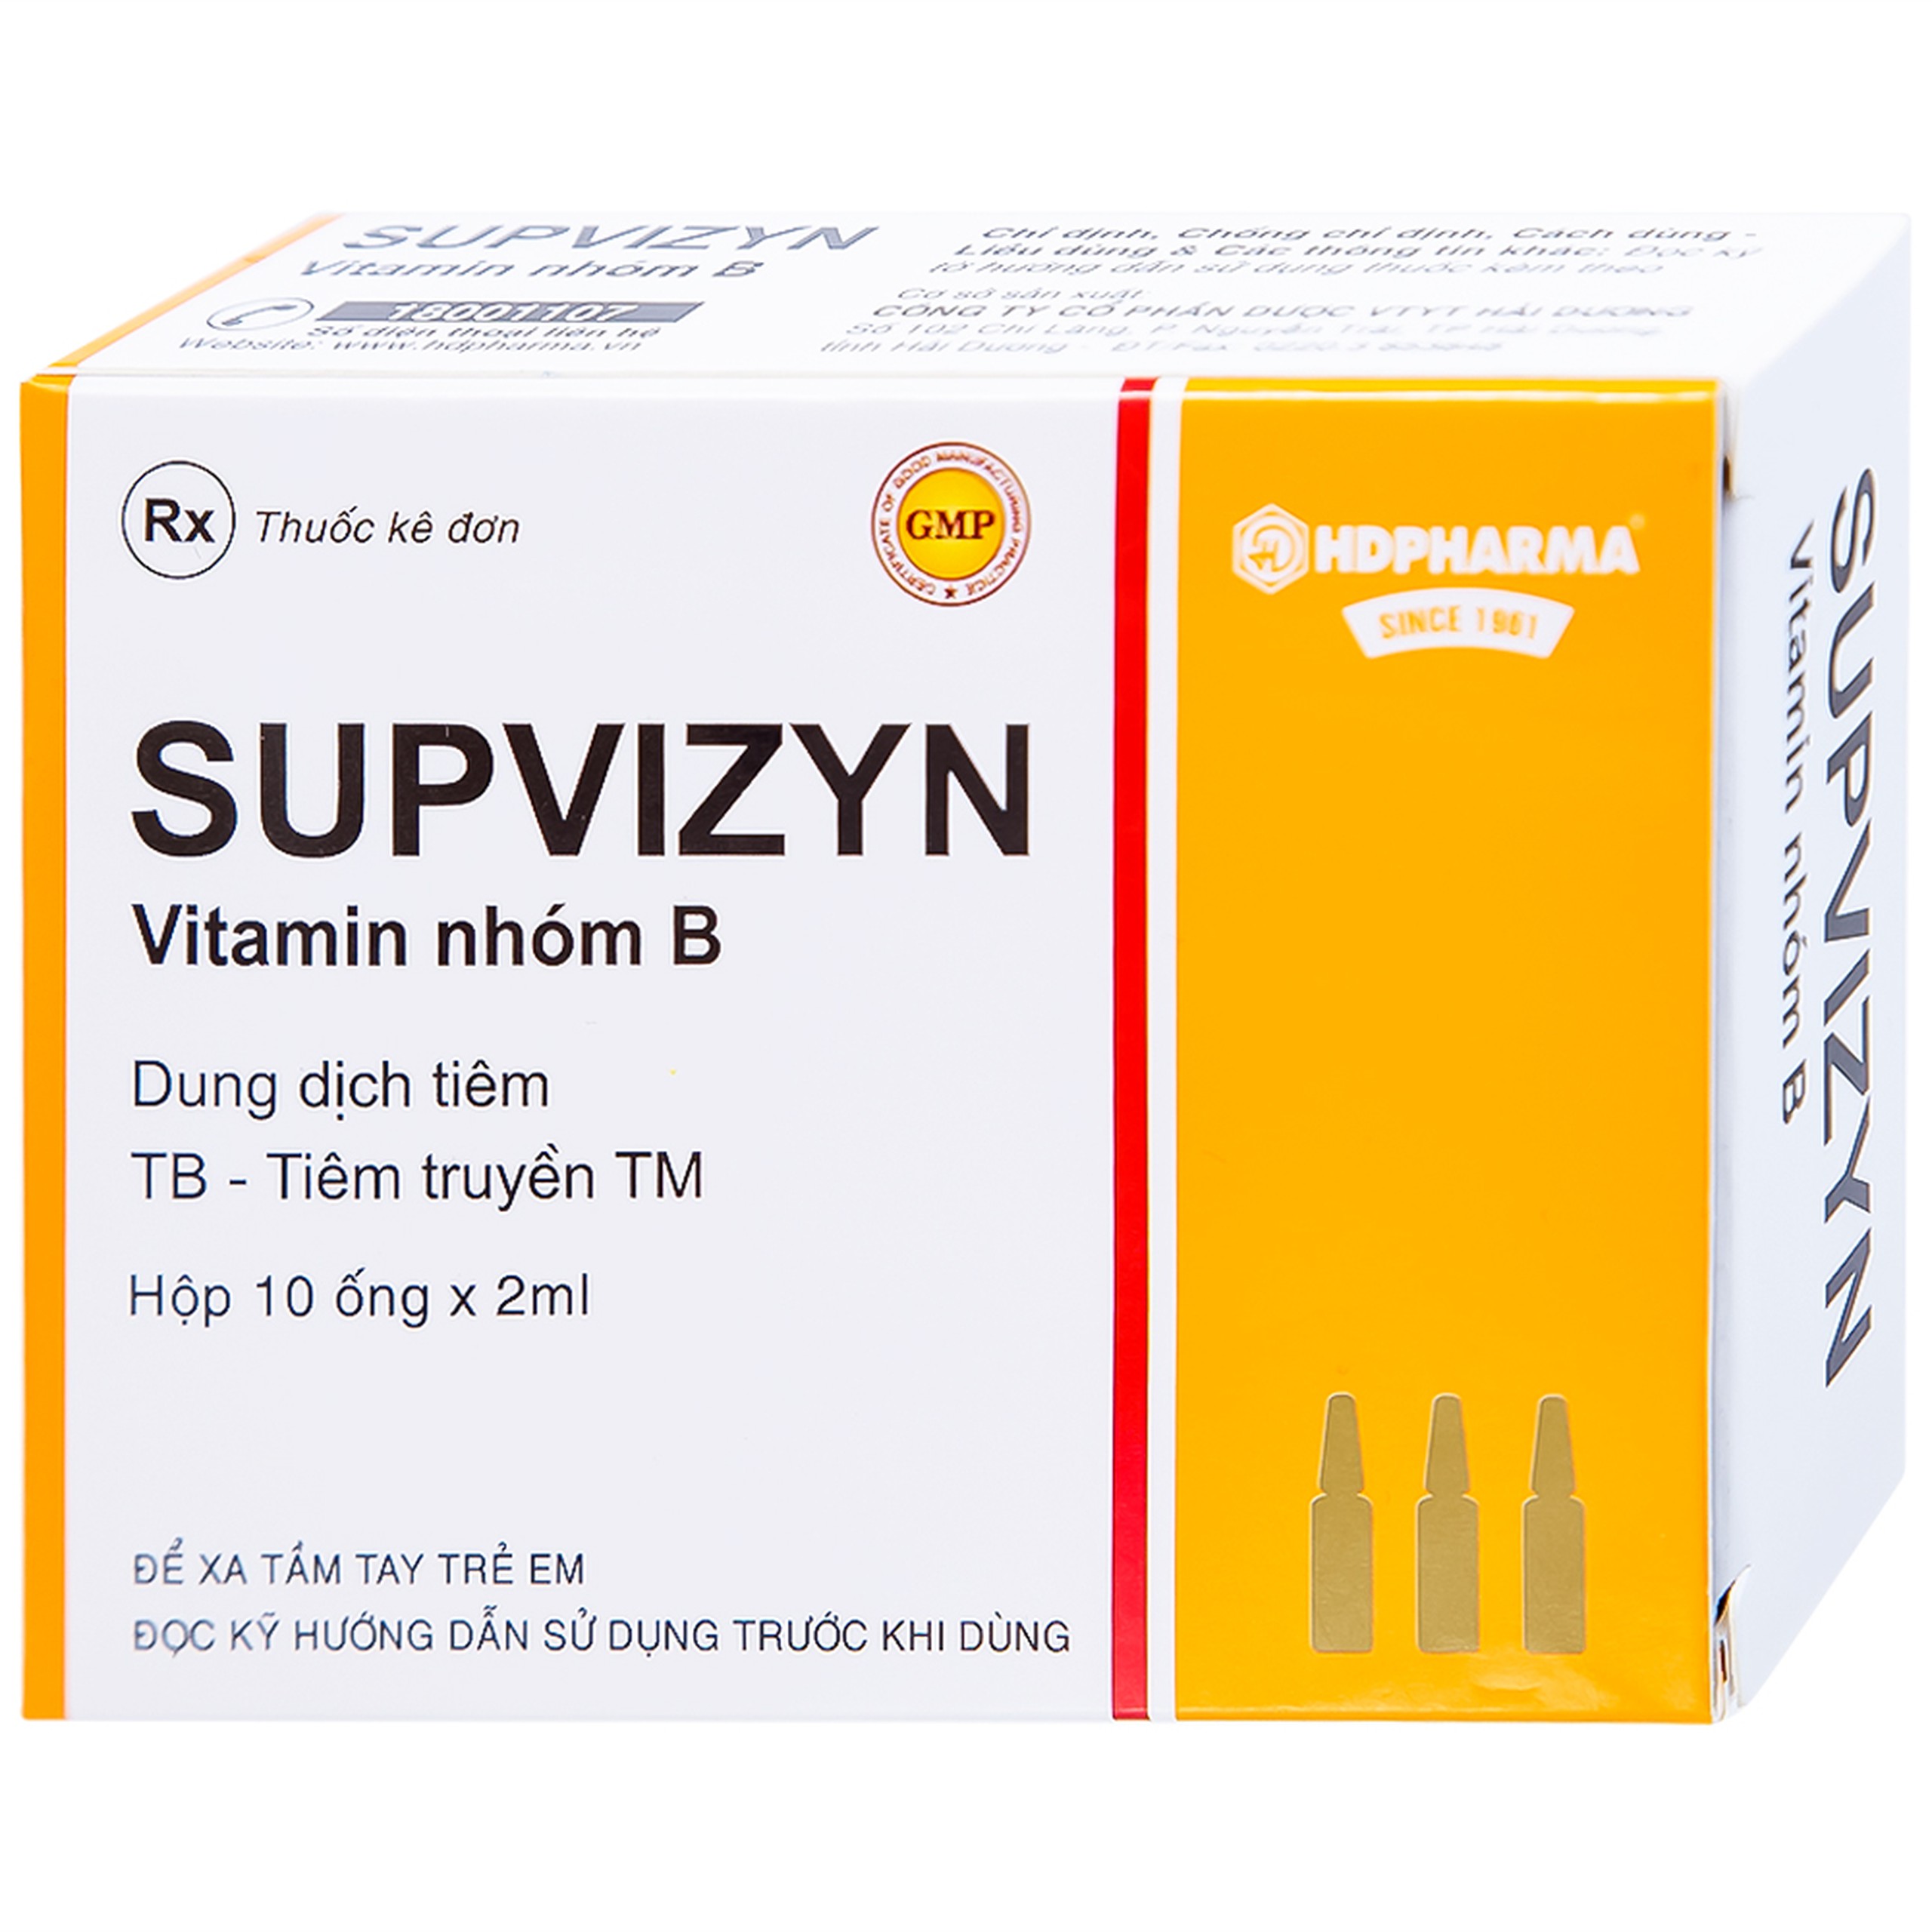 Dung dịch tiêm Supvizyn HDpharma dự phòng và điều trị thiếu các Vitamin nhóm B (10 ống)